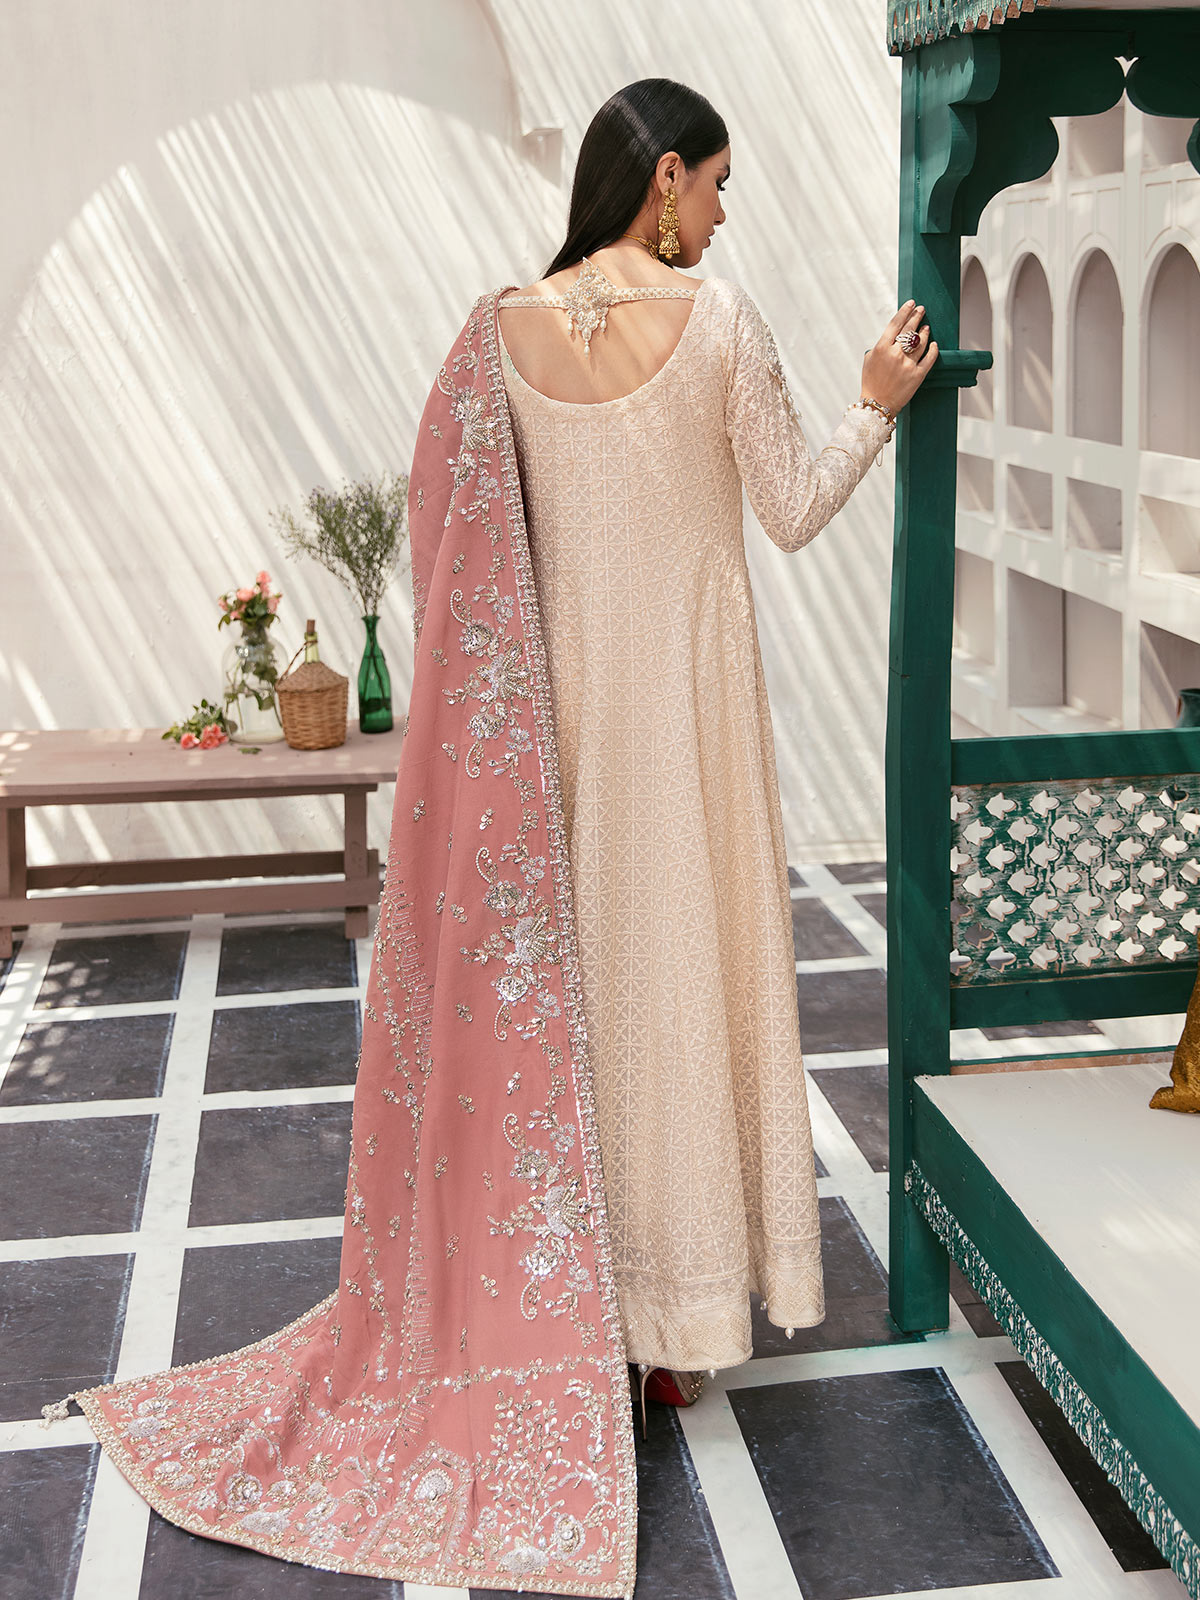 GL-WS-22V1-34 (Pishwas and chooridaar pyjama) Zaryaab Wedding Formals Collection by Gulaal